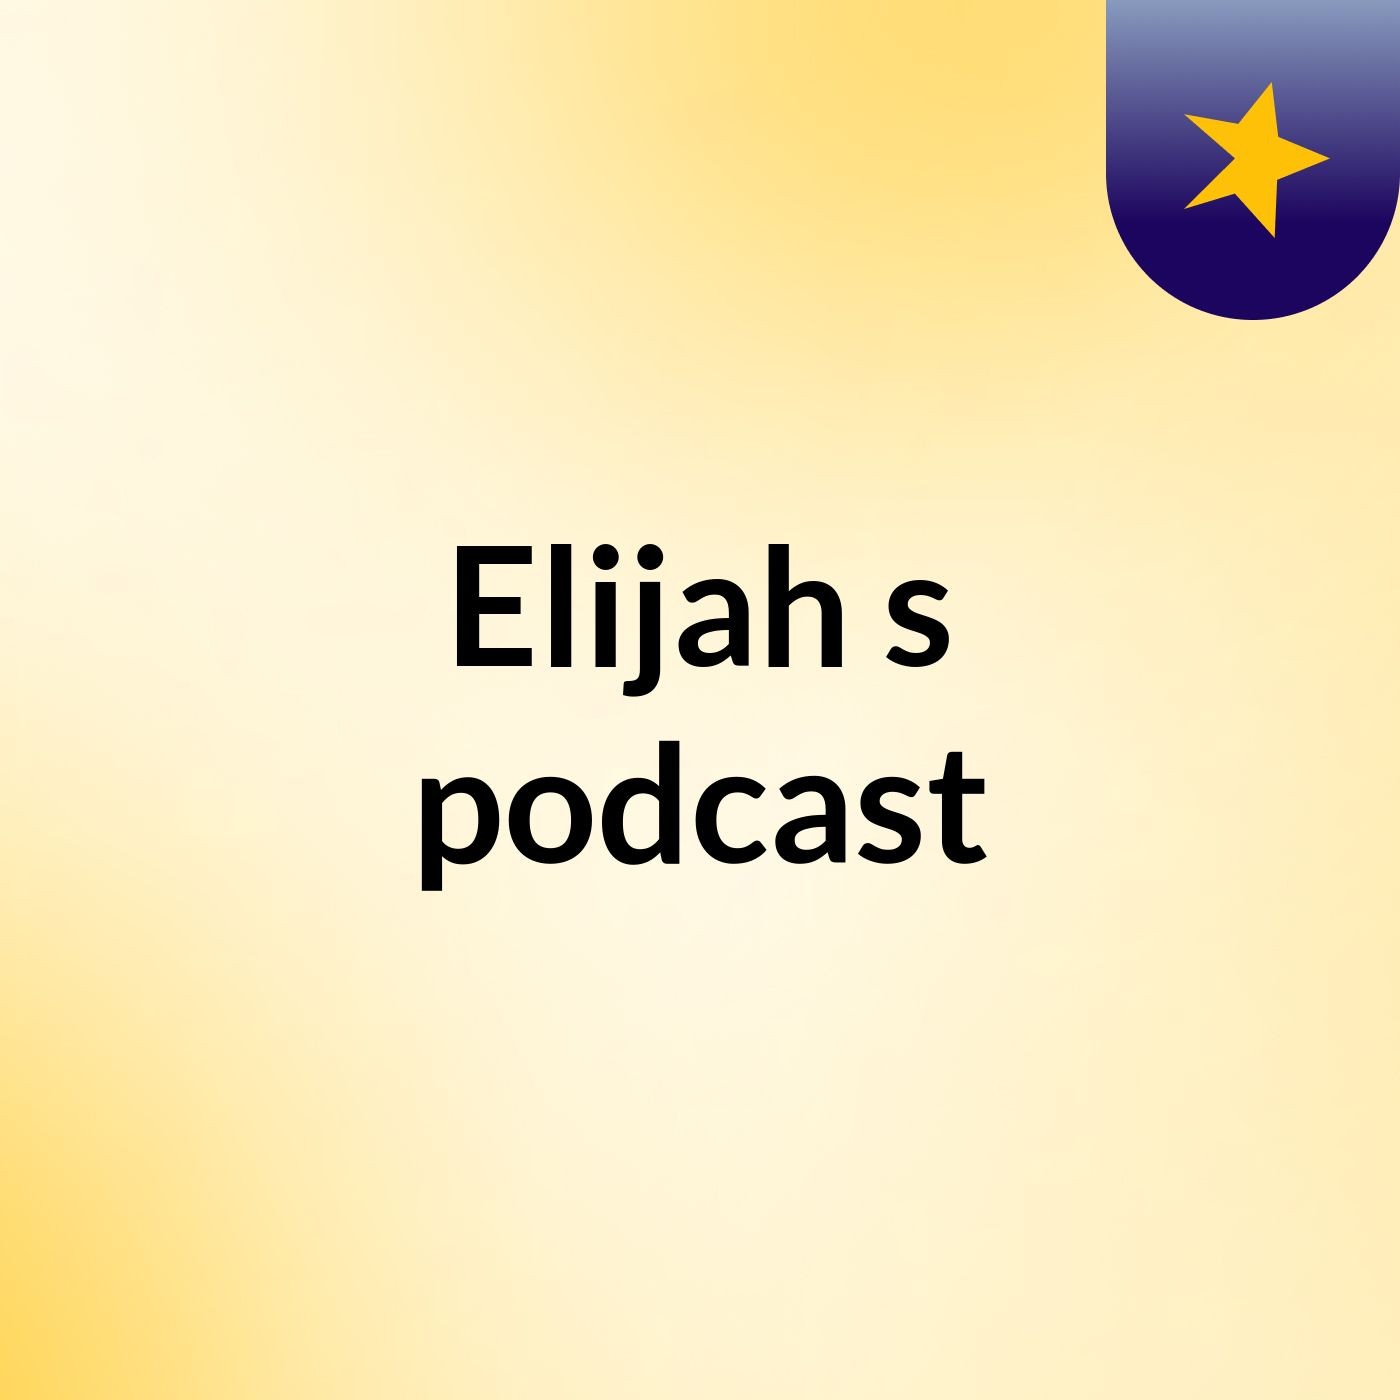 Elijah's podcast